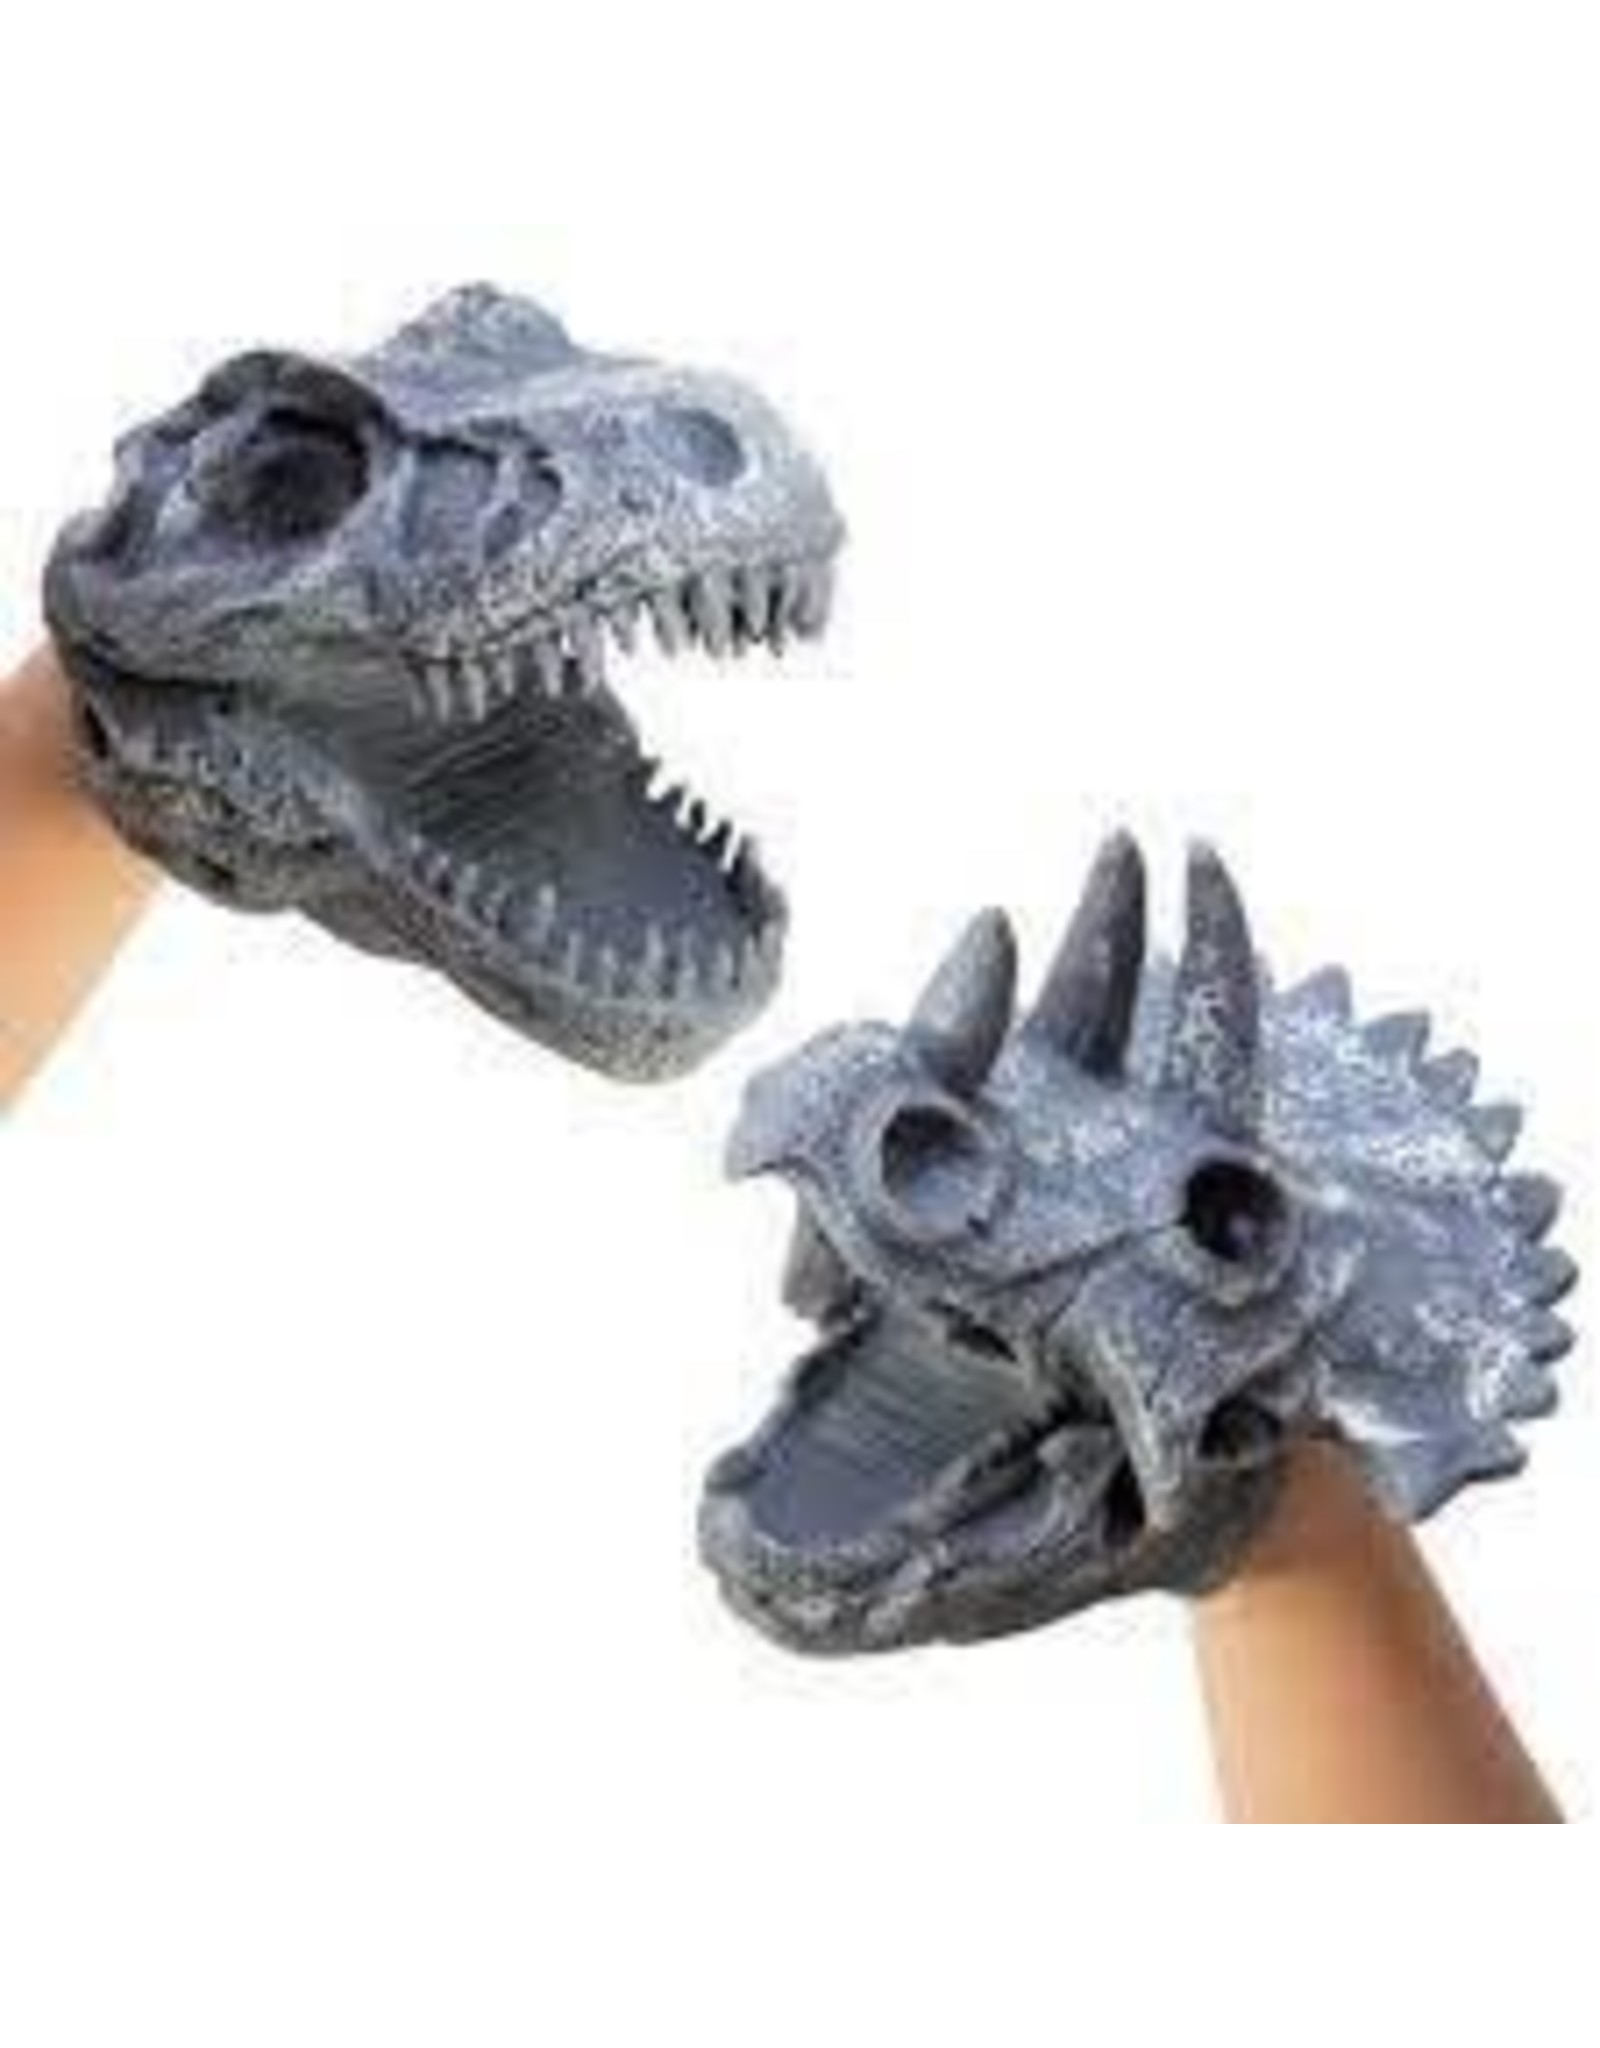 5" Dino Skull Hand Puppet